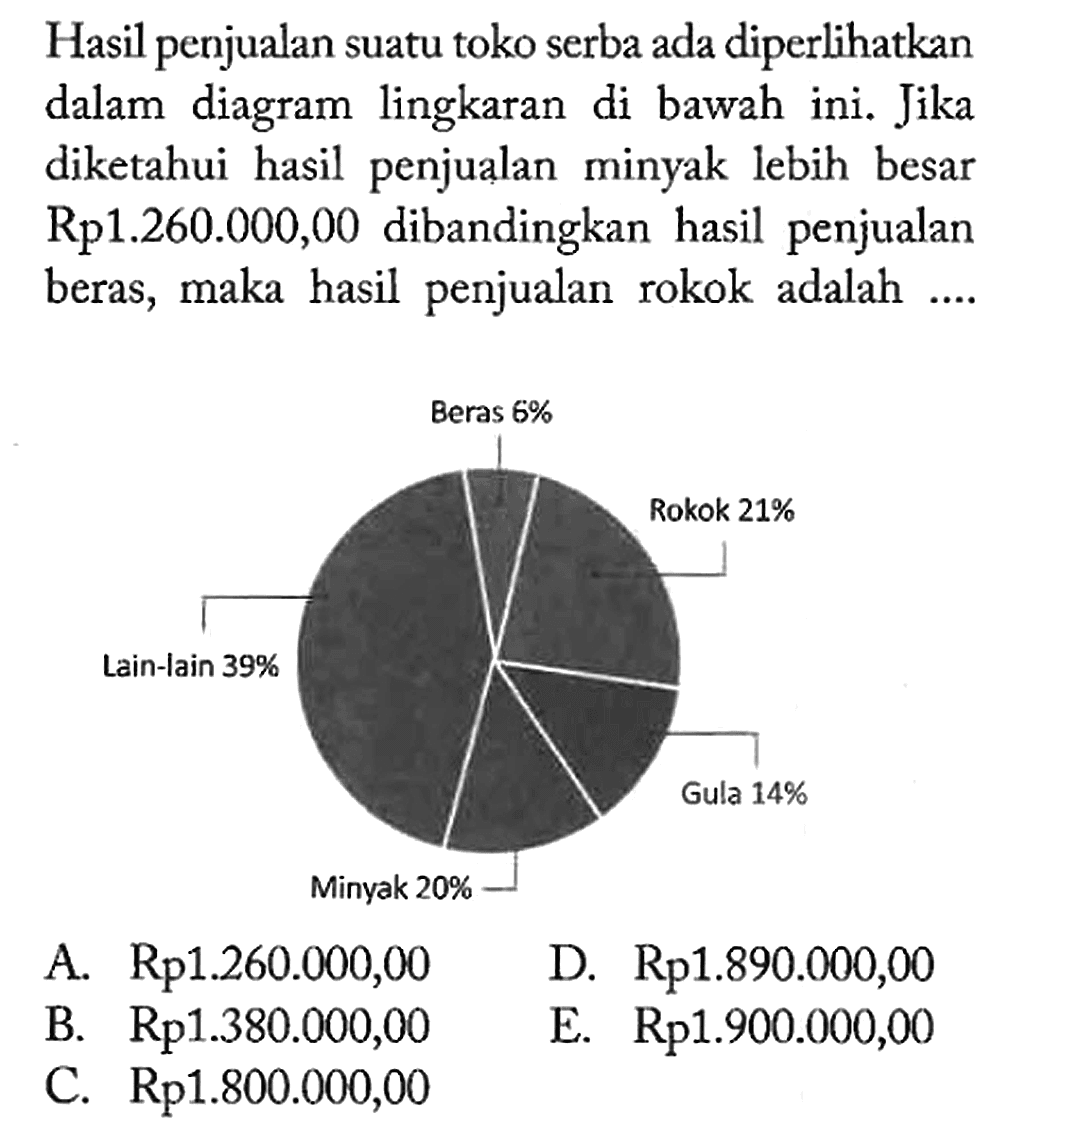 Hasil penjualan suatu toko serba ada diperlihatkan dalam diagram lingkaran di bawah ini. Jika diketahui hasil penjualan minyak lebih besar Rp1.260.000,00 dibandingkan hasil penjualan beras, maka hasil penjualan rokok adalah .... Beras 6% Rokok 21% Gula 14% Minyak 20% Lain-lain 39% 
A. Rp1.260.000,00 D. Rp 1.890.000,00 B. Rp 1.380.000,00 E. Rp1.900.000,00 C. Rp 1.800.000,00 